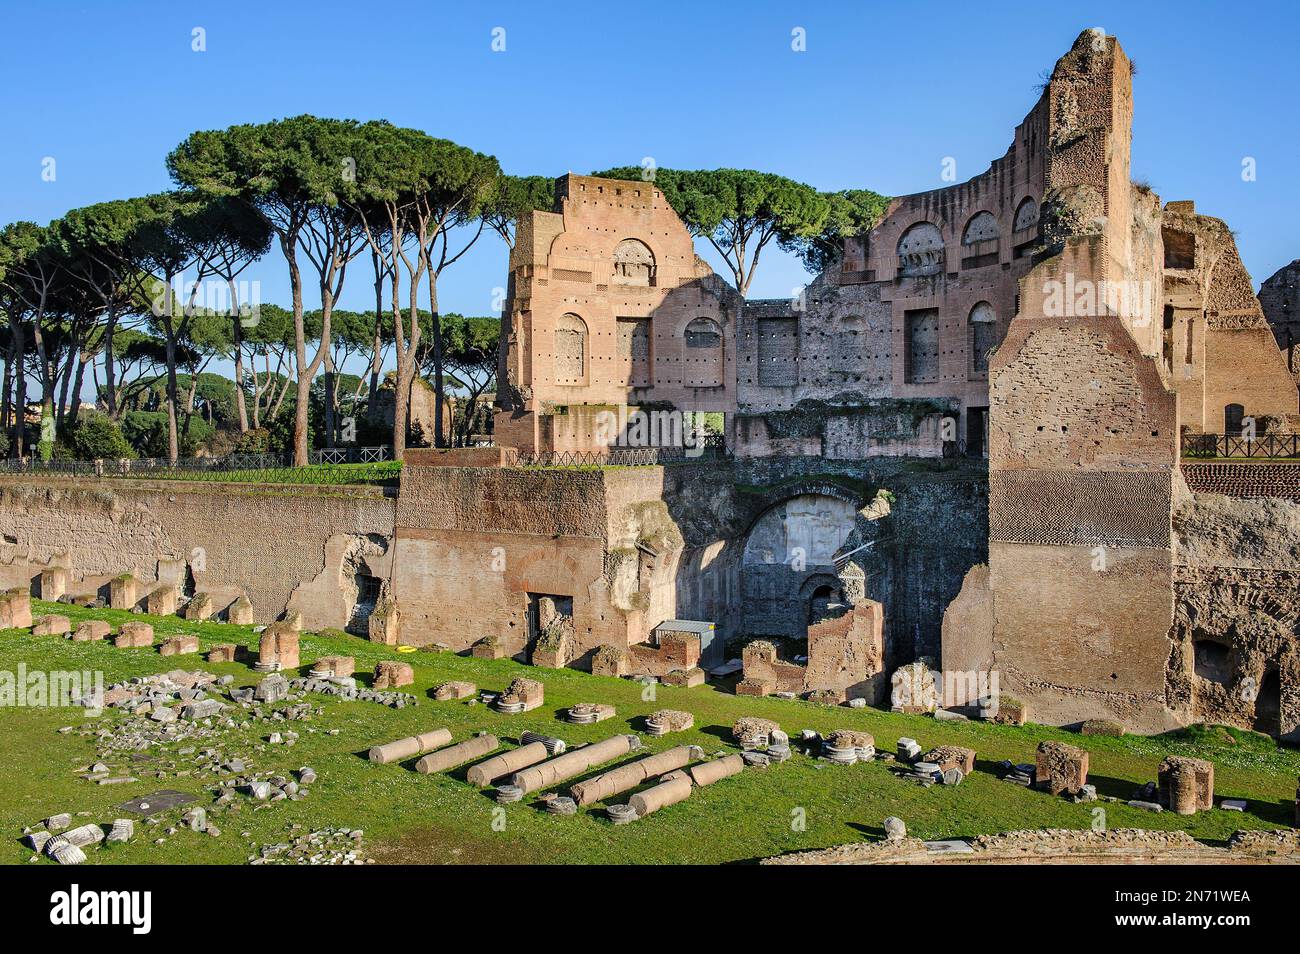 historisches Hippodrom, Ruine von Stadion von Domitian, Palatinhügel, Palatin, Rom, Lazio, Italia, Europa Foto Stock